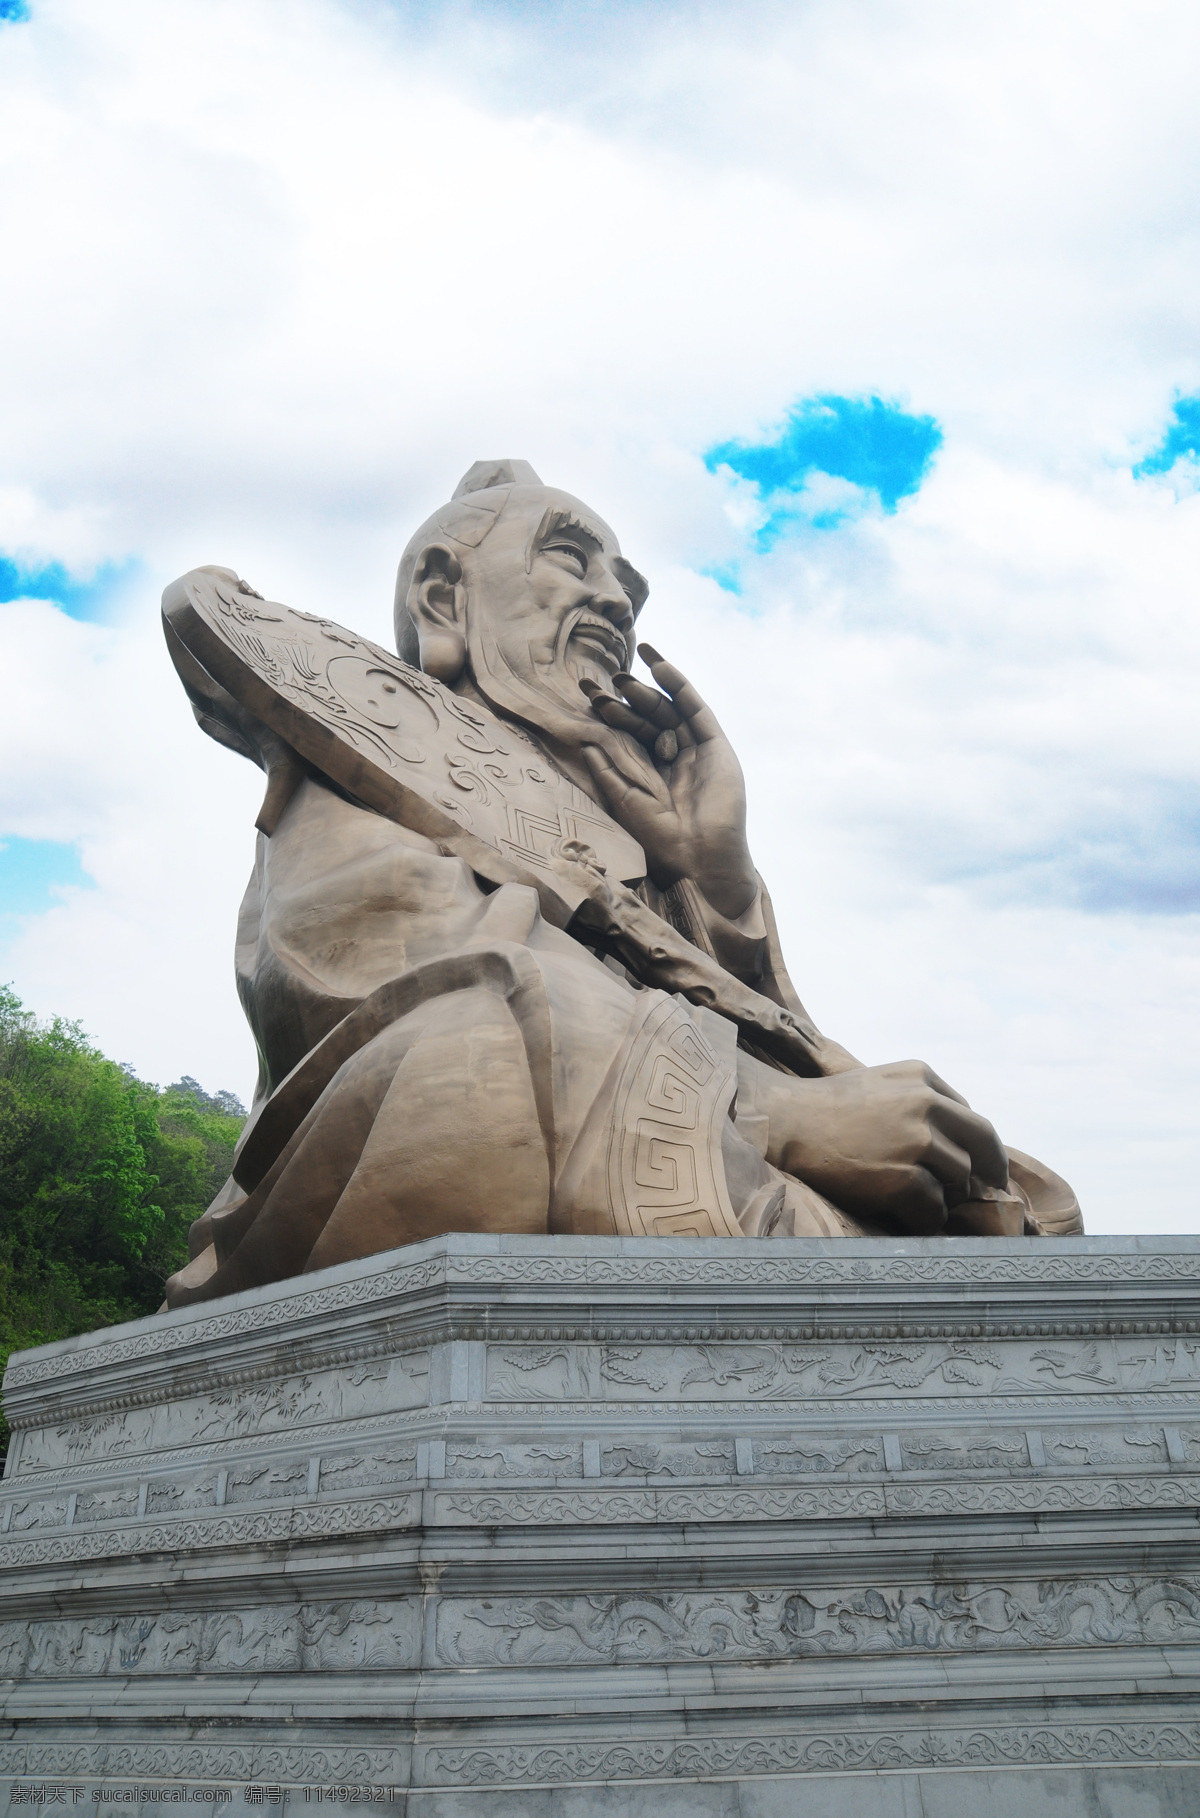 茅山 老子铜像 古建筑 设计素材 高清图片 人文景观 旅游摄影